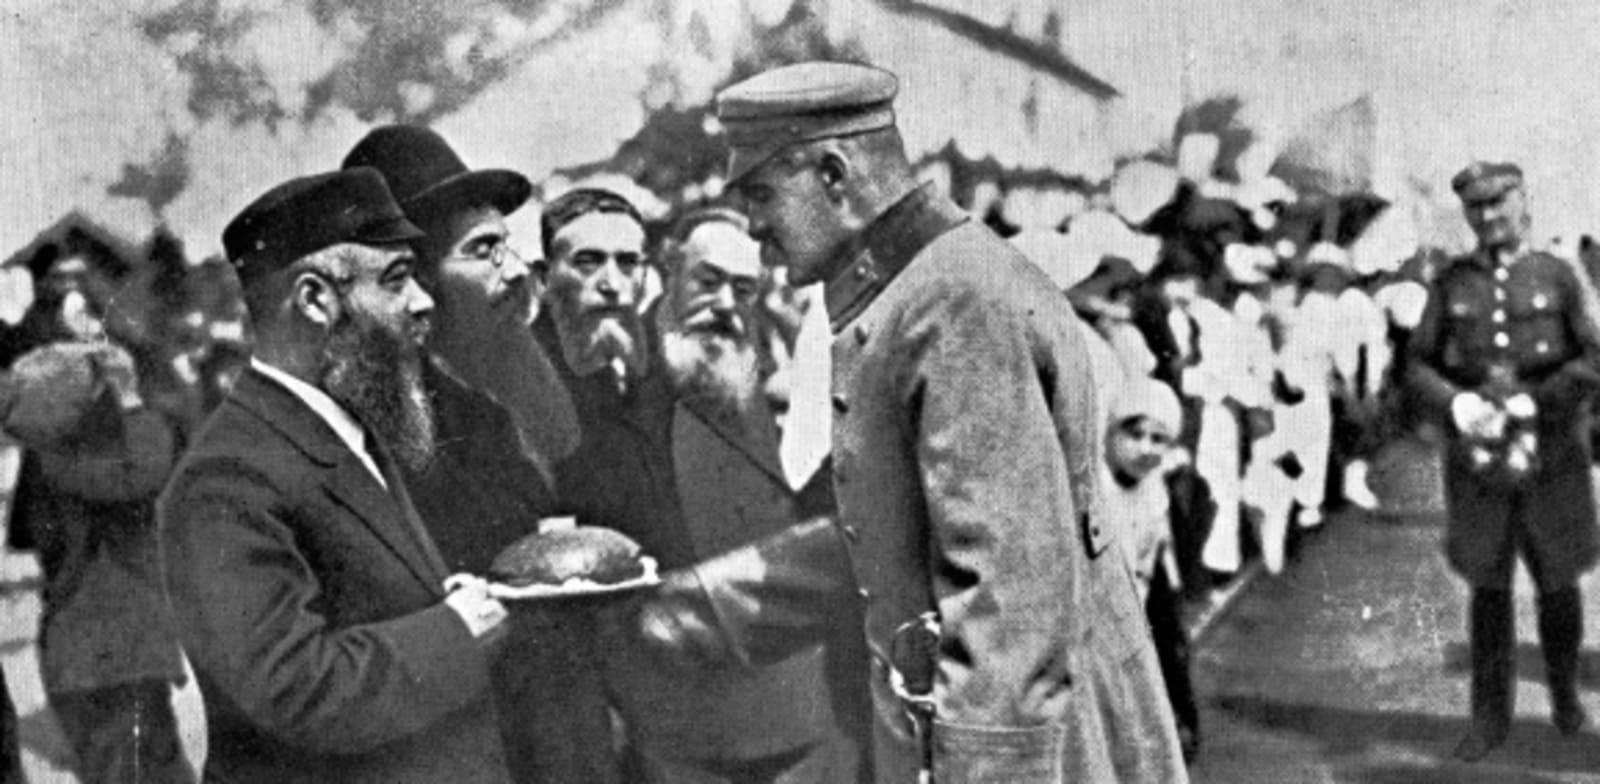 זקני הקהילה היהודית הקטנה של דנבלין מקבלים את פני מייסד פולין החדשה והגיבור הלאומי שלה יוזף פילסודסקי, 1920 / צילום: מתוך ויקיפדיה